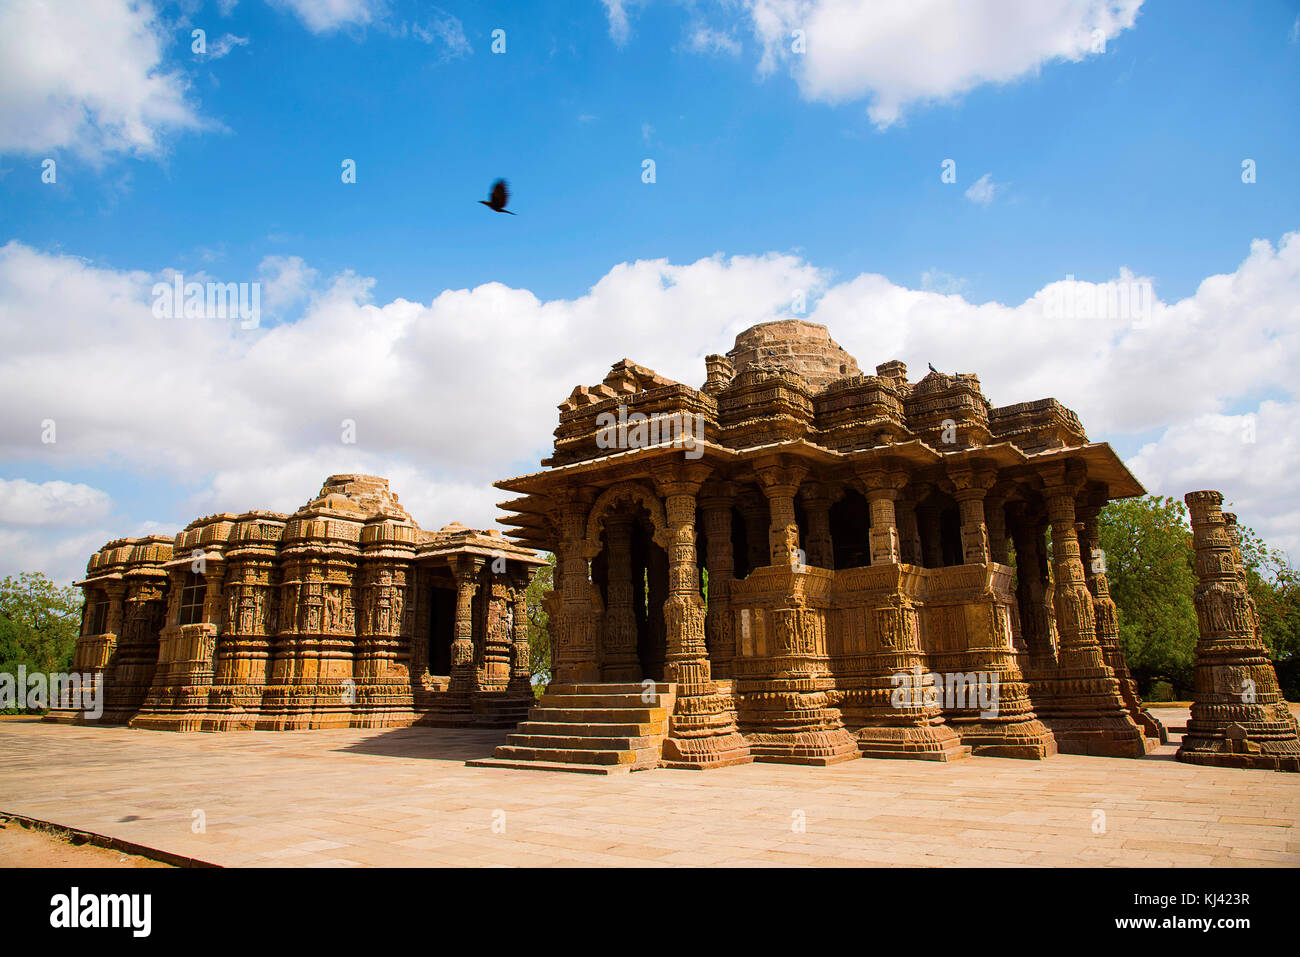 Il Tempio del Sole, tempio indù dedicato alla divinità solare Surya (Sole). Villaggio Modhera del distretto di Mehsana, Gujarat, India Foto Stock